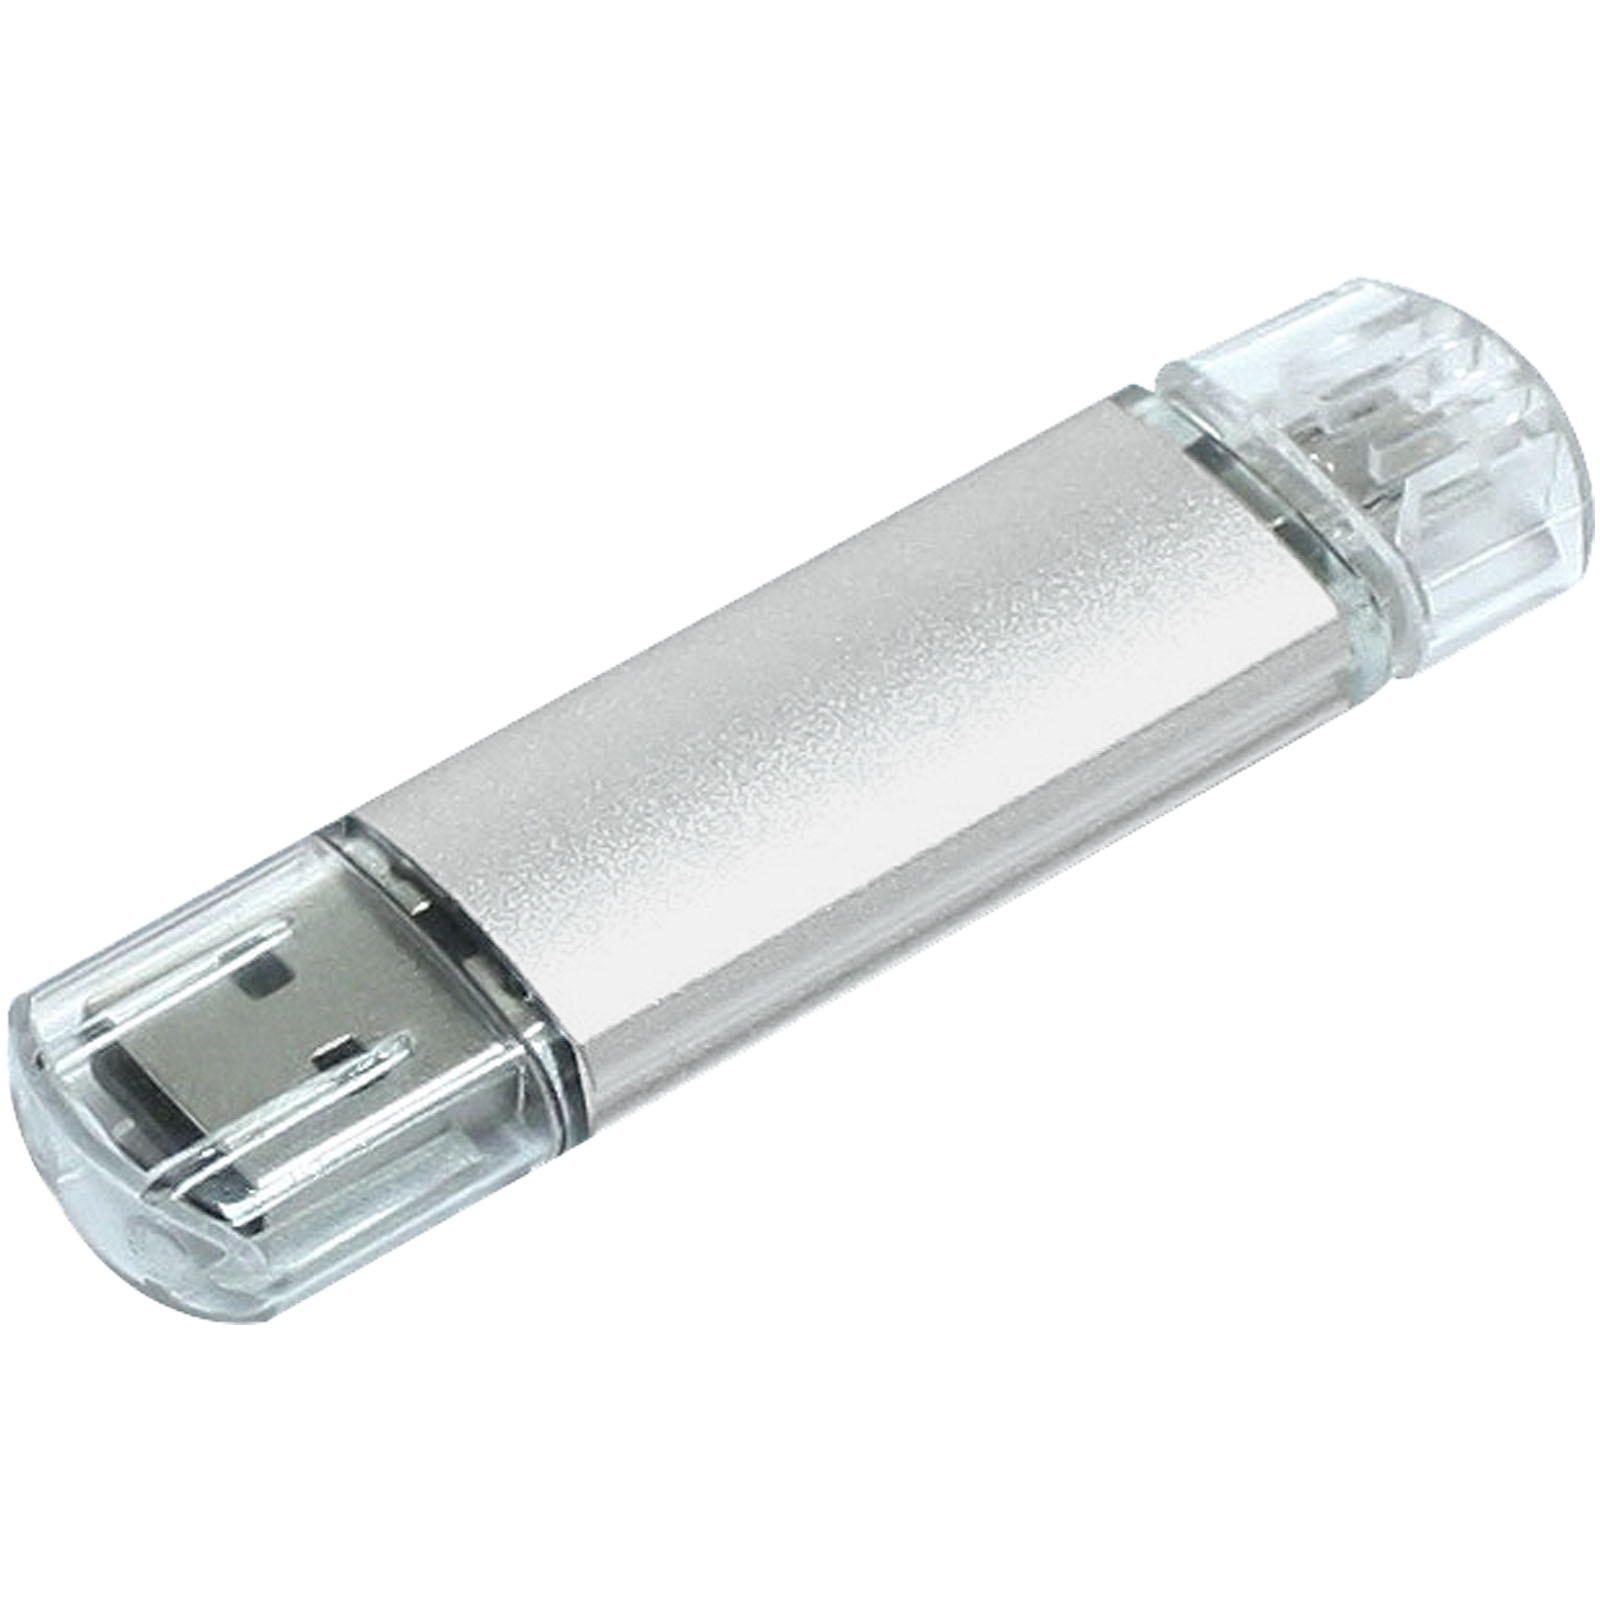 Aluminium Micro-USB OTG USB-Stick - Maxhütte-Haidhof